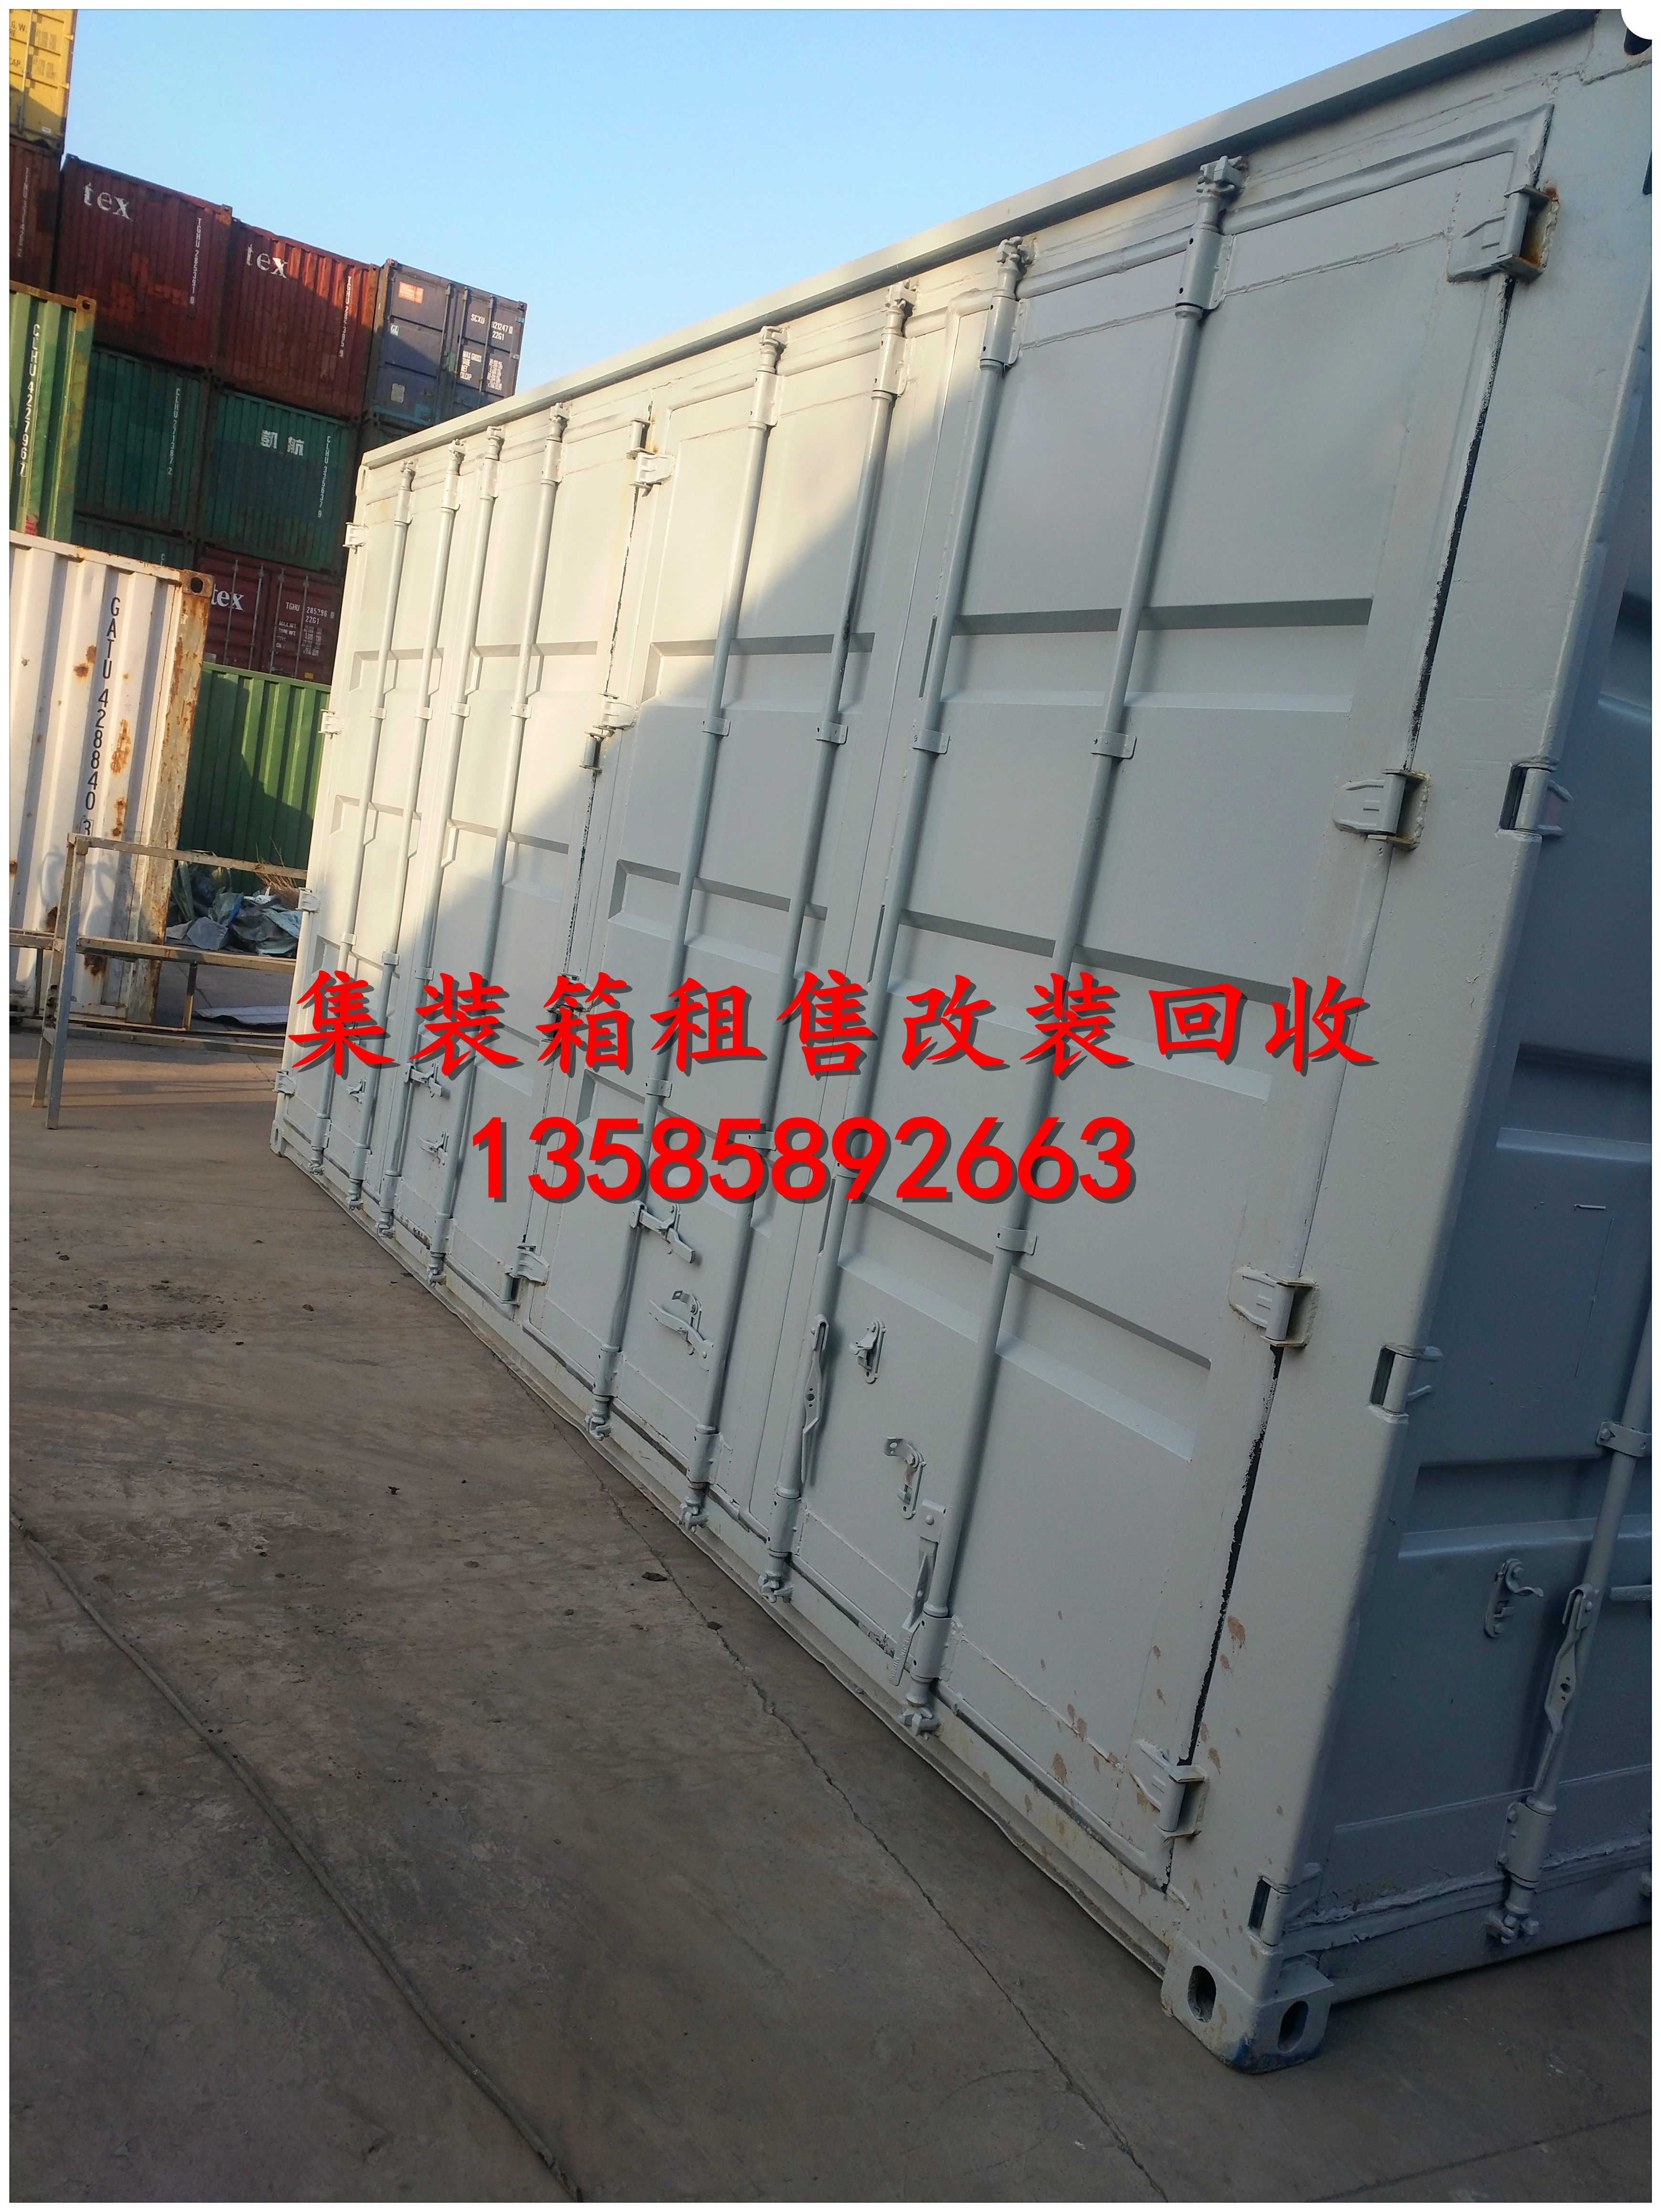 上海改装集装箱侧门原装门出售